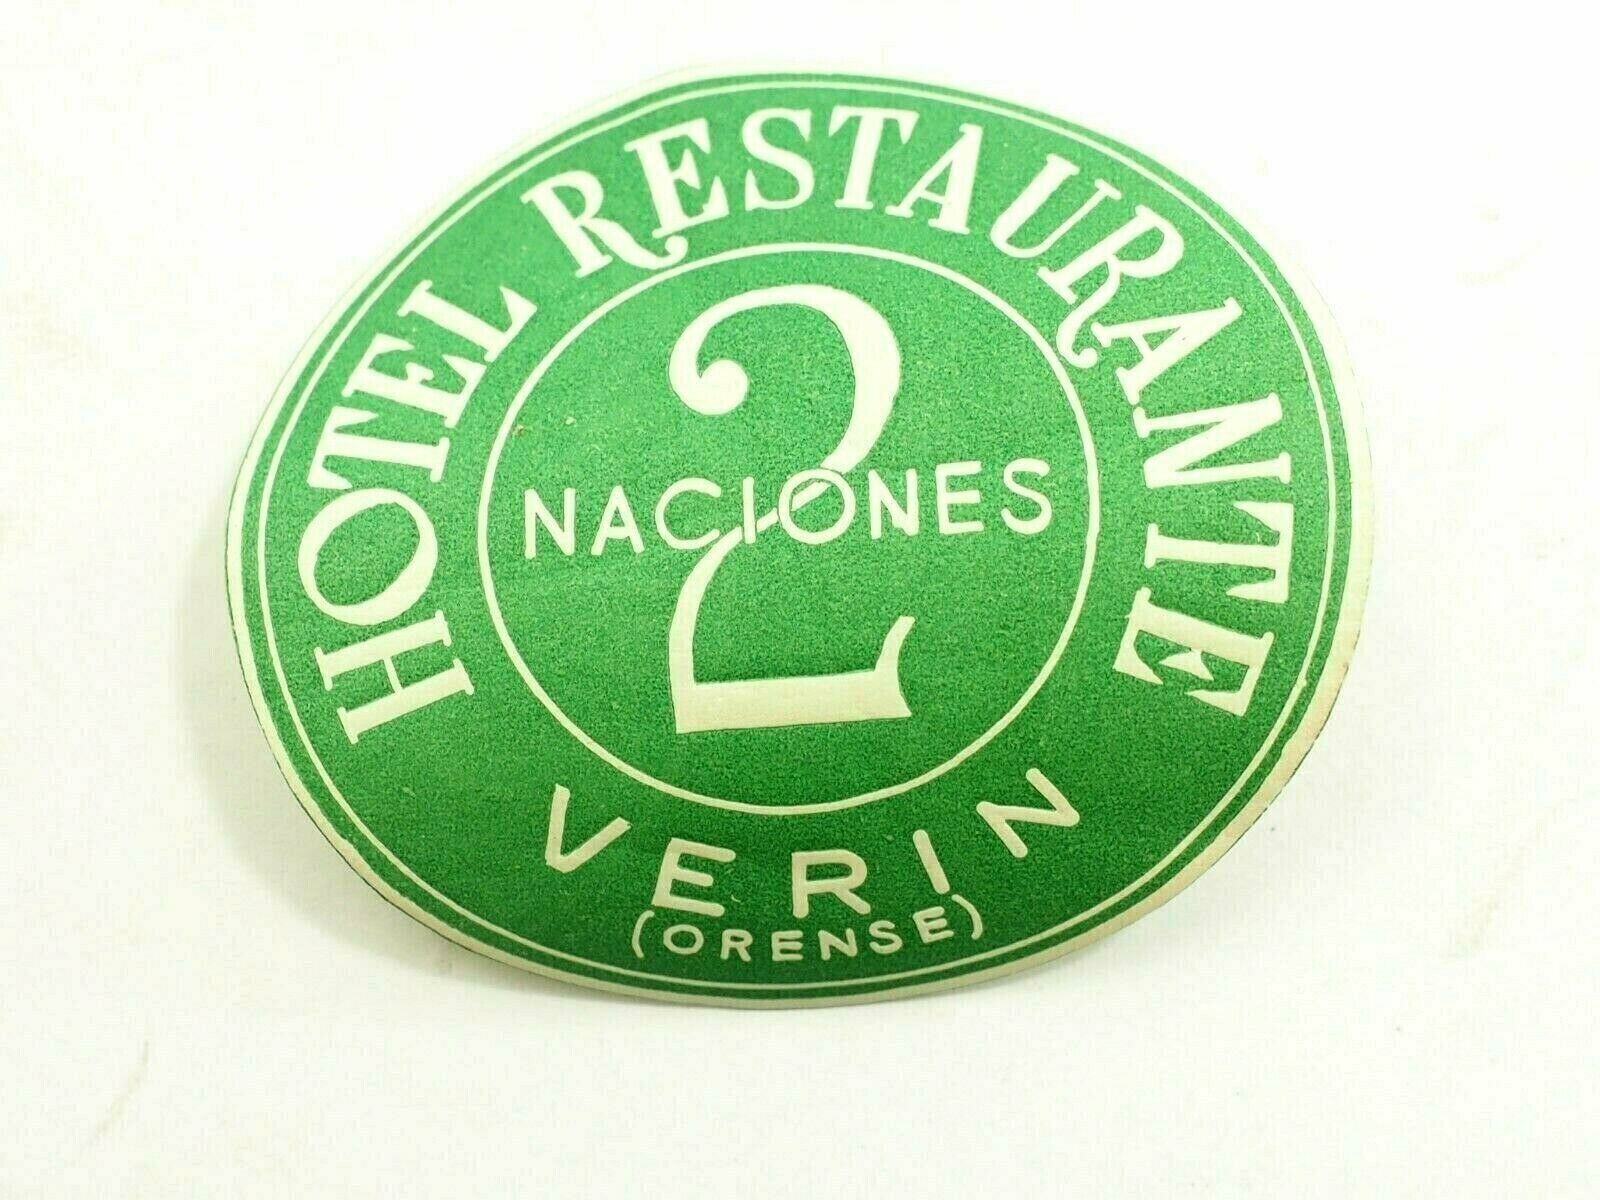 Hotel Restaurante 2 Nationes Verin Orense Spain Travel Luggage Label